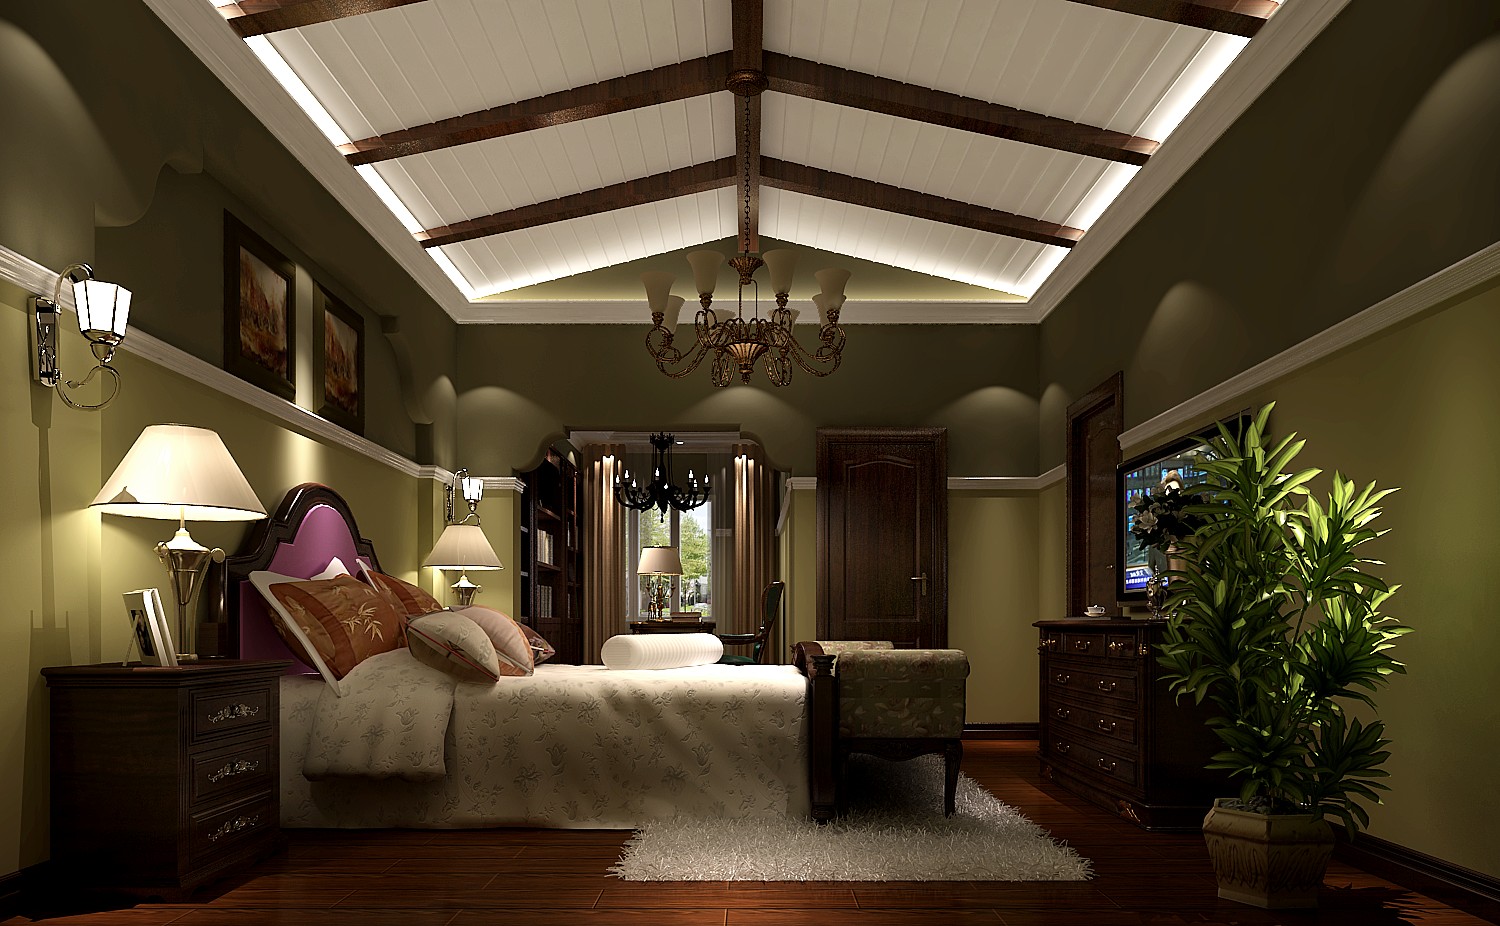 简约 别墅 美式 自由 温馨 卧室图片来自say简单在潮白河孔雀城托斯卡纳风格的分享